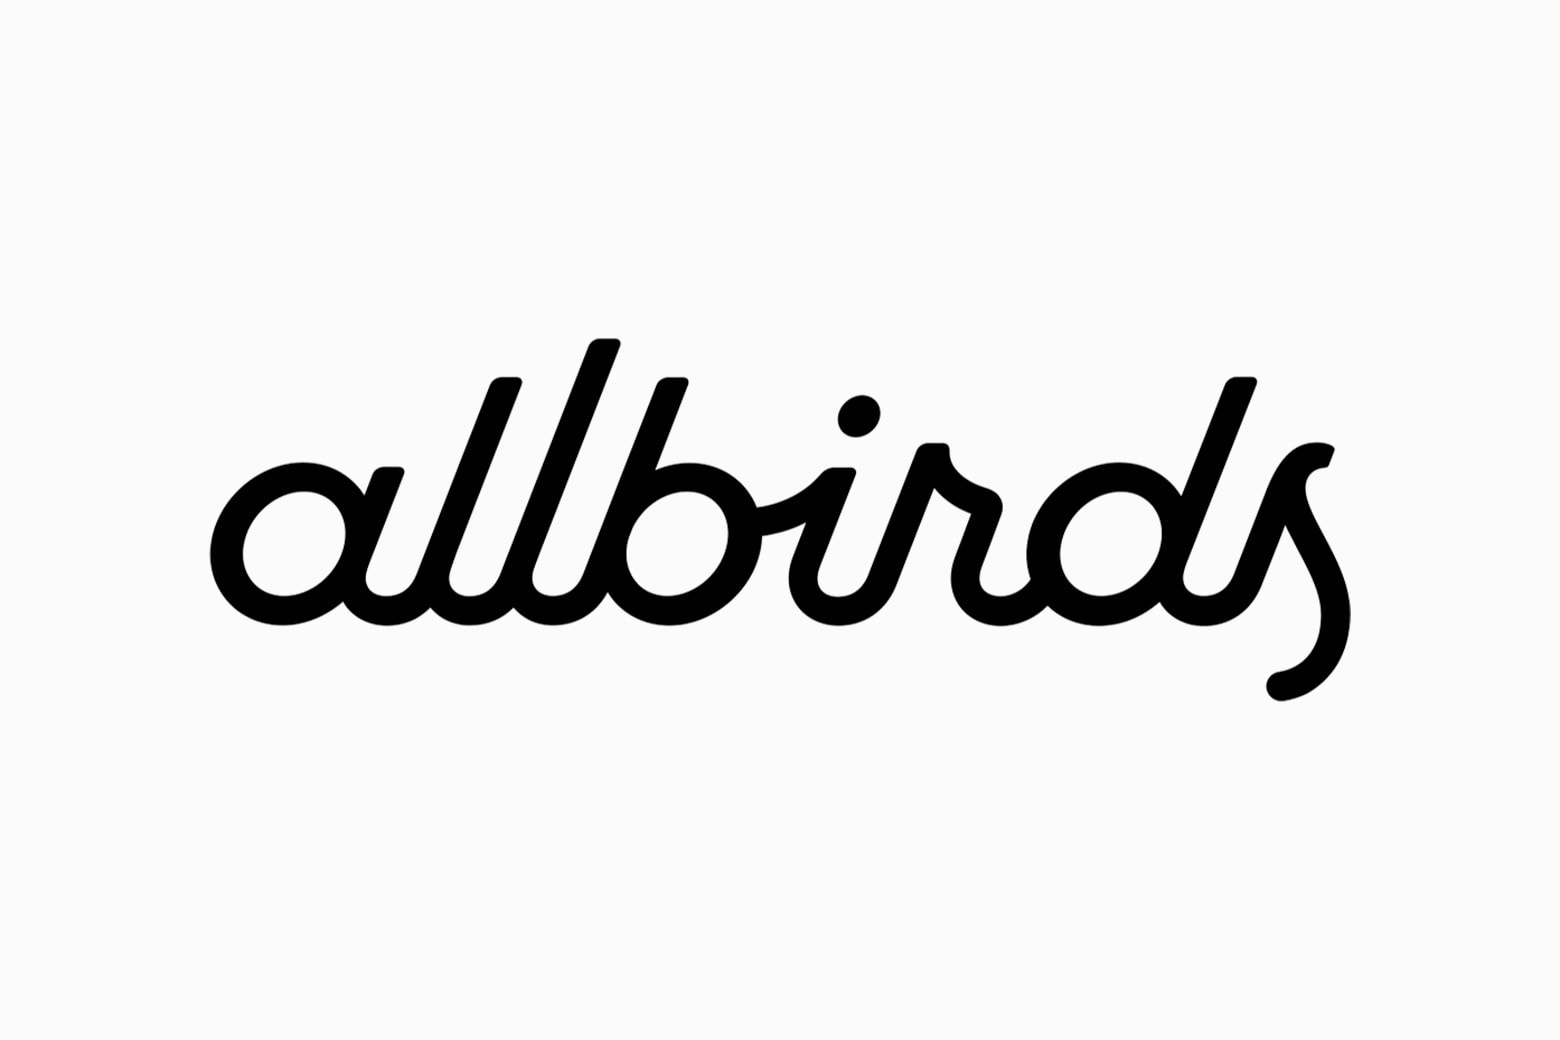 allbirds deals discounts - Luxe Digital